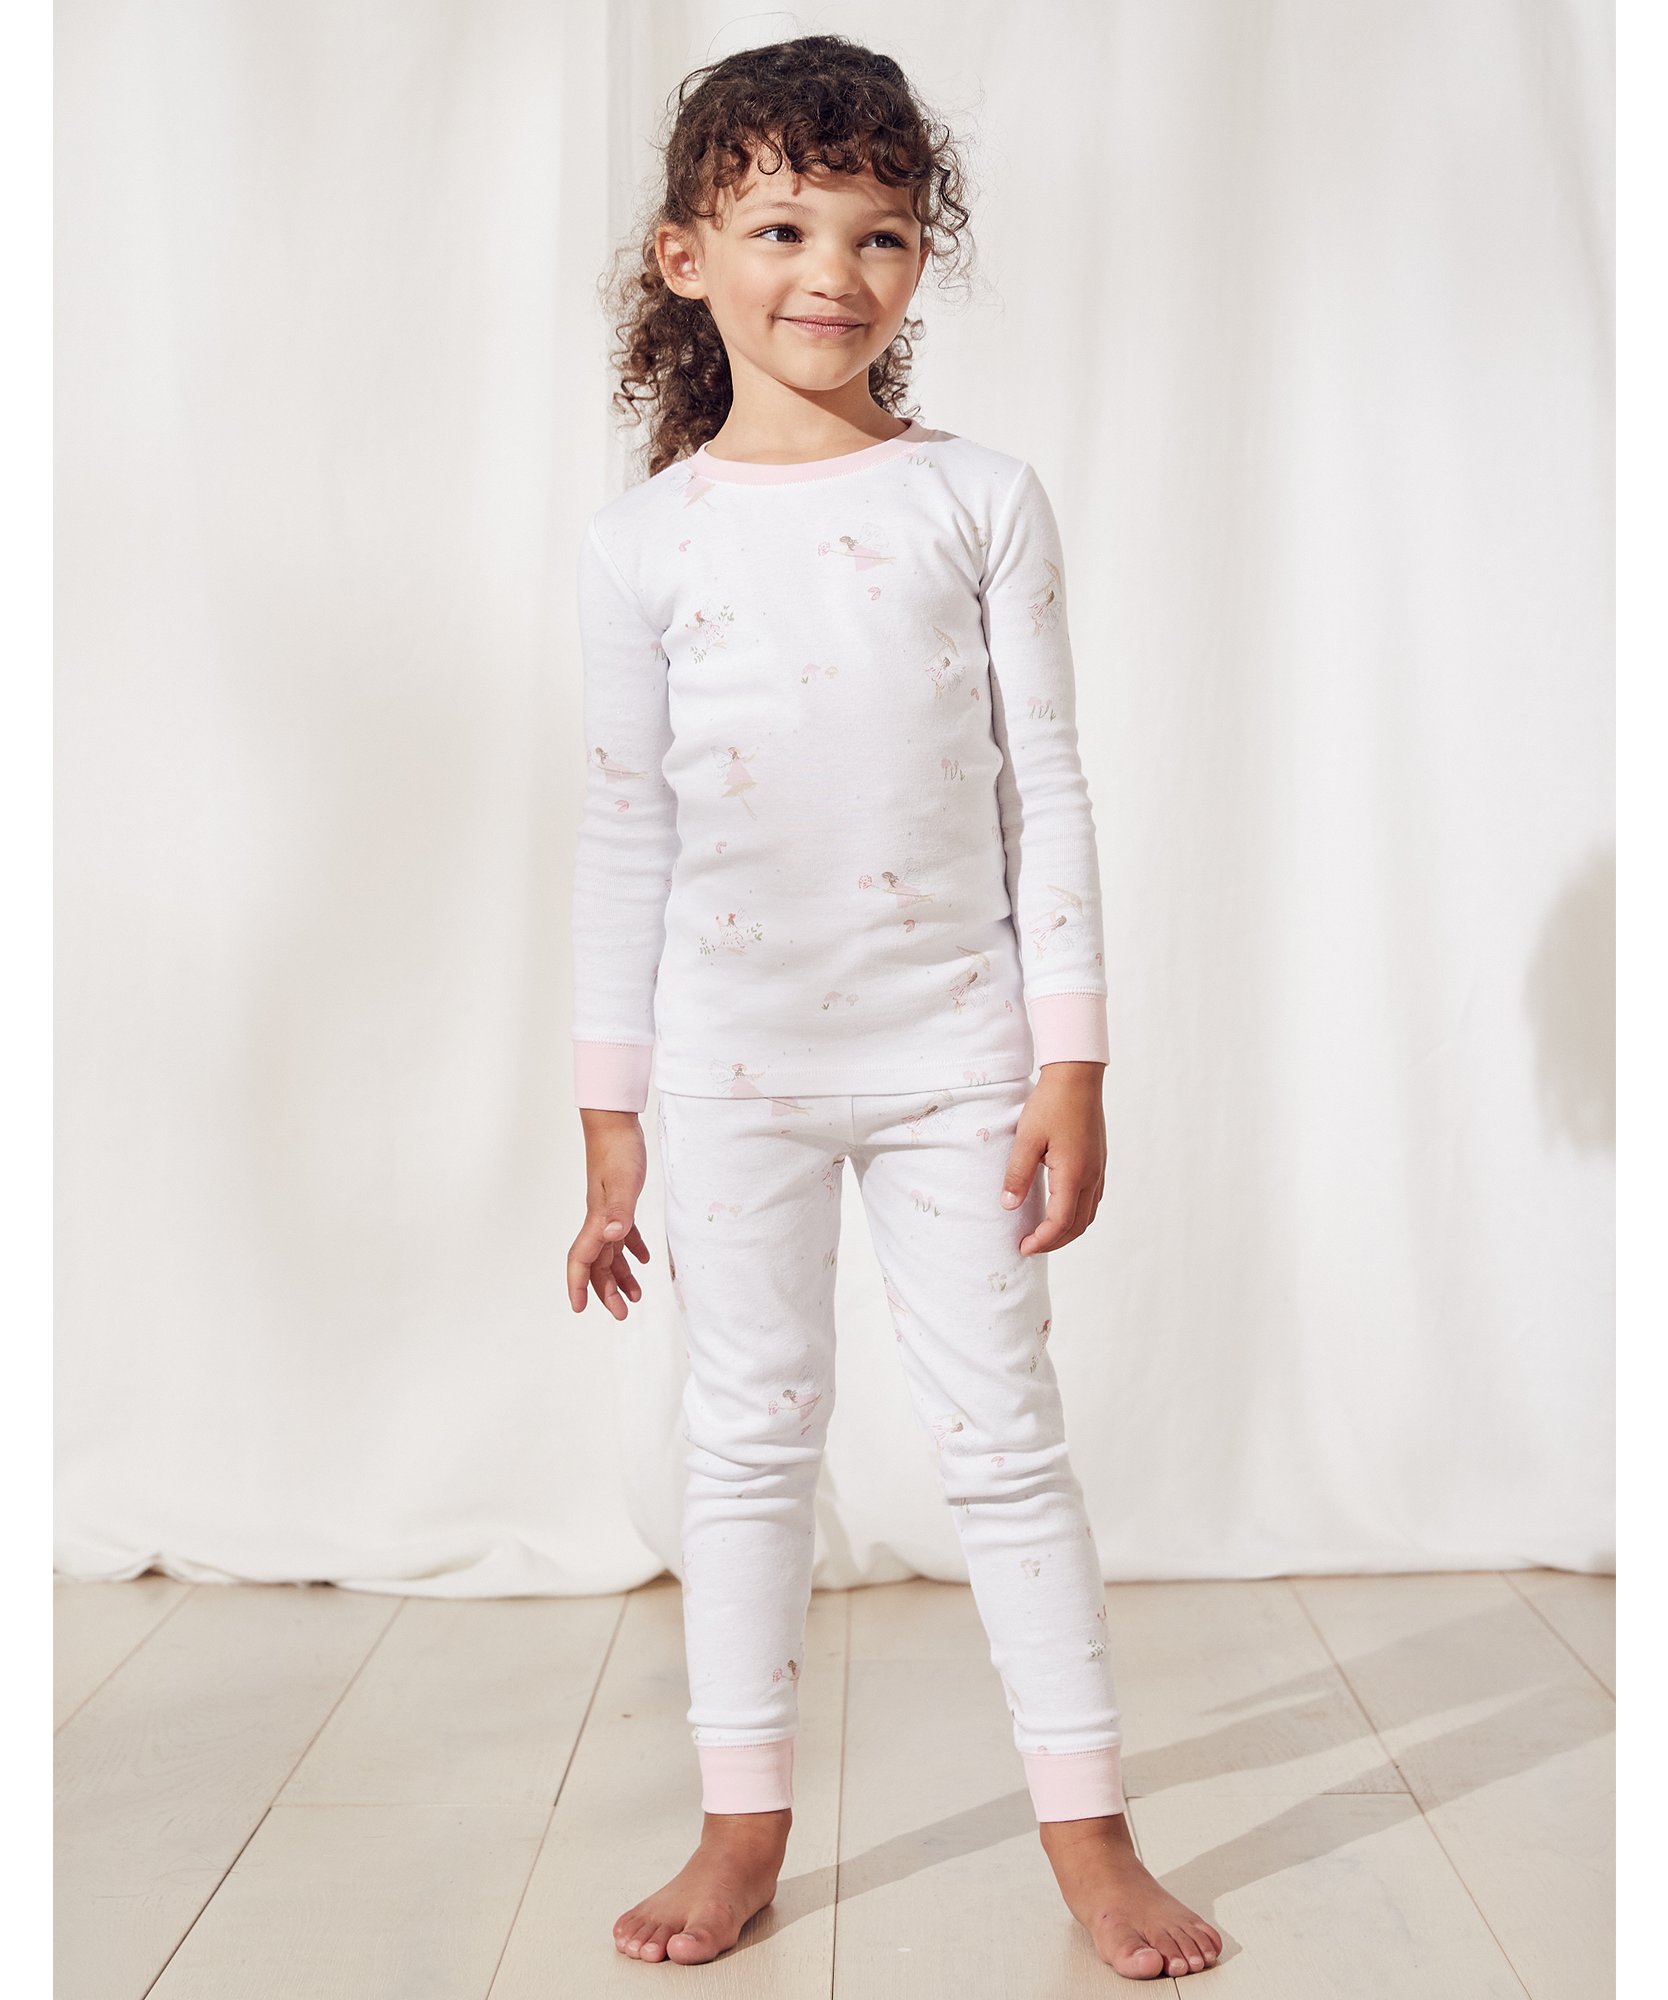 Fairy-Print Slim-Fit Pyjamas Multi 1-12yrs The White Company Girls Clothing Loungewear Pajamas 11-12Y 